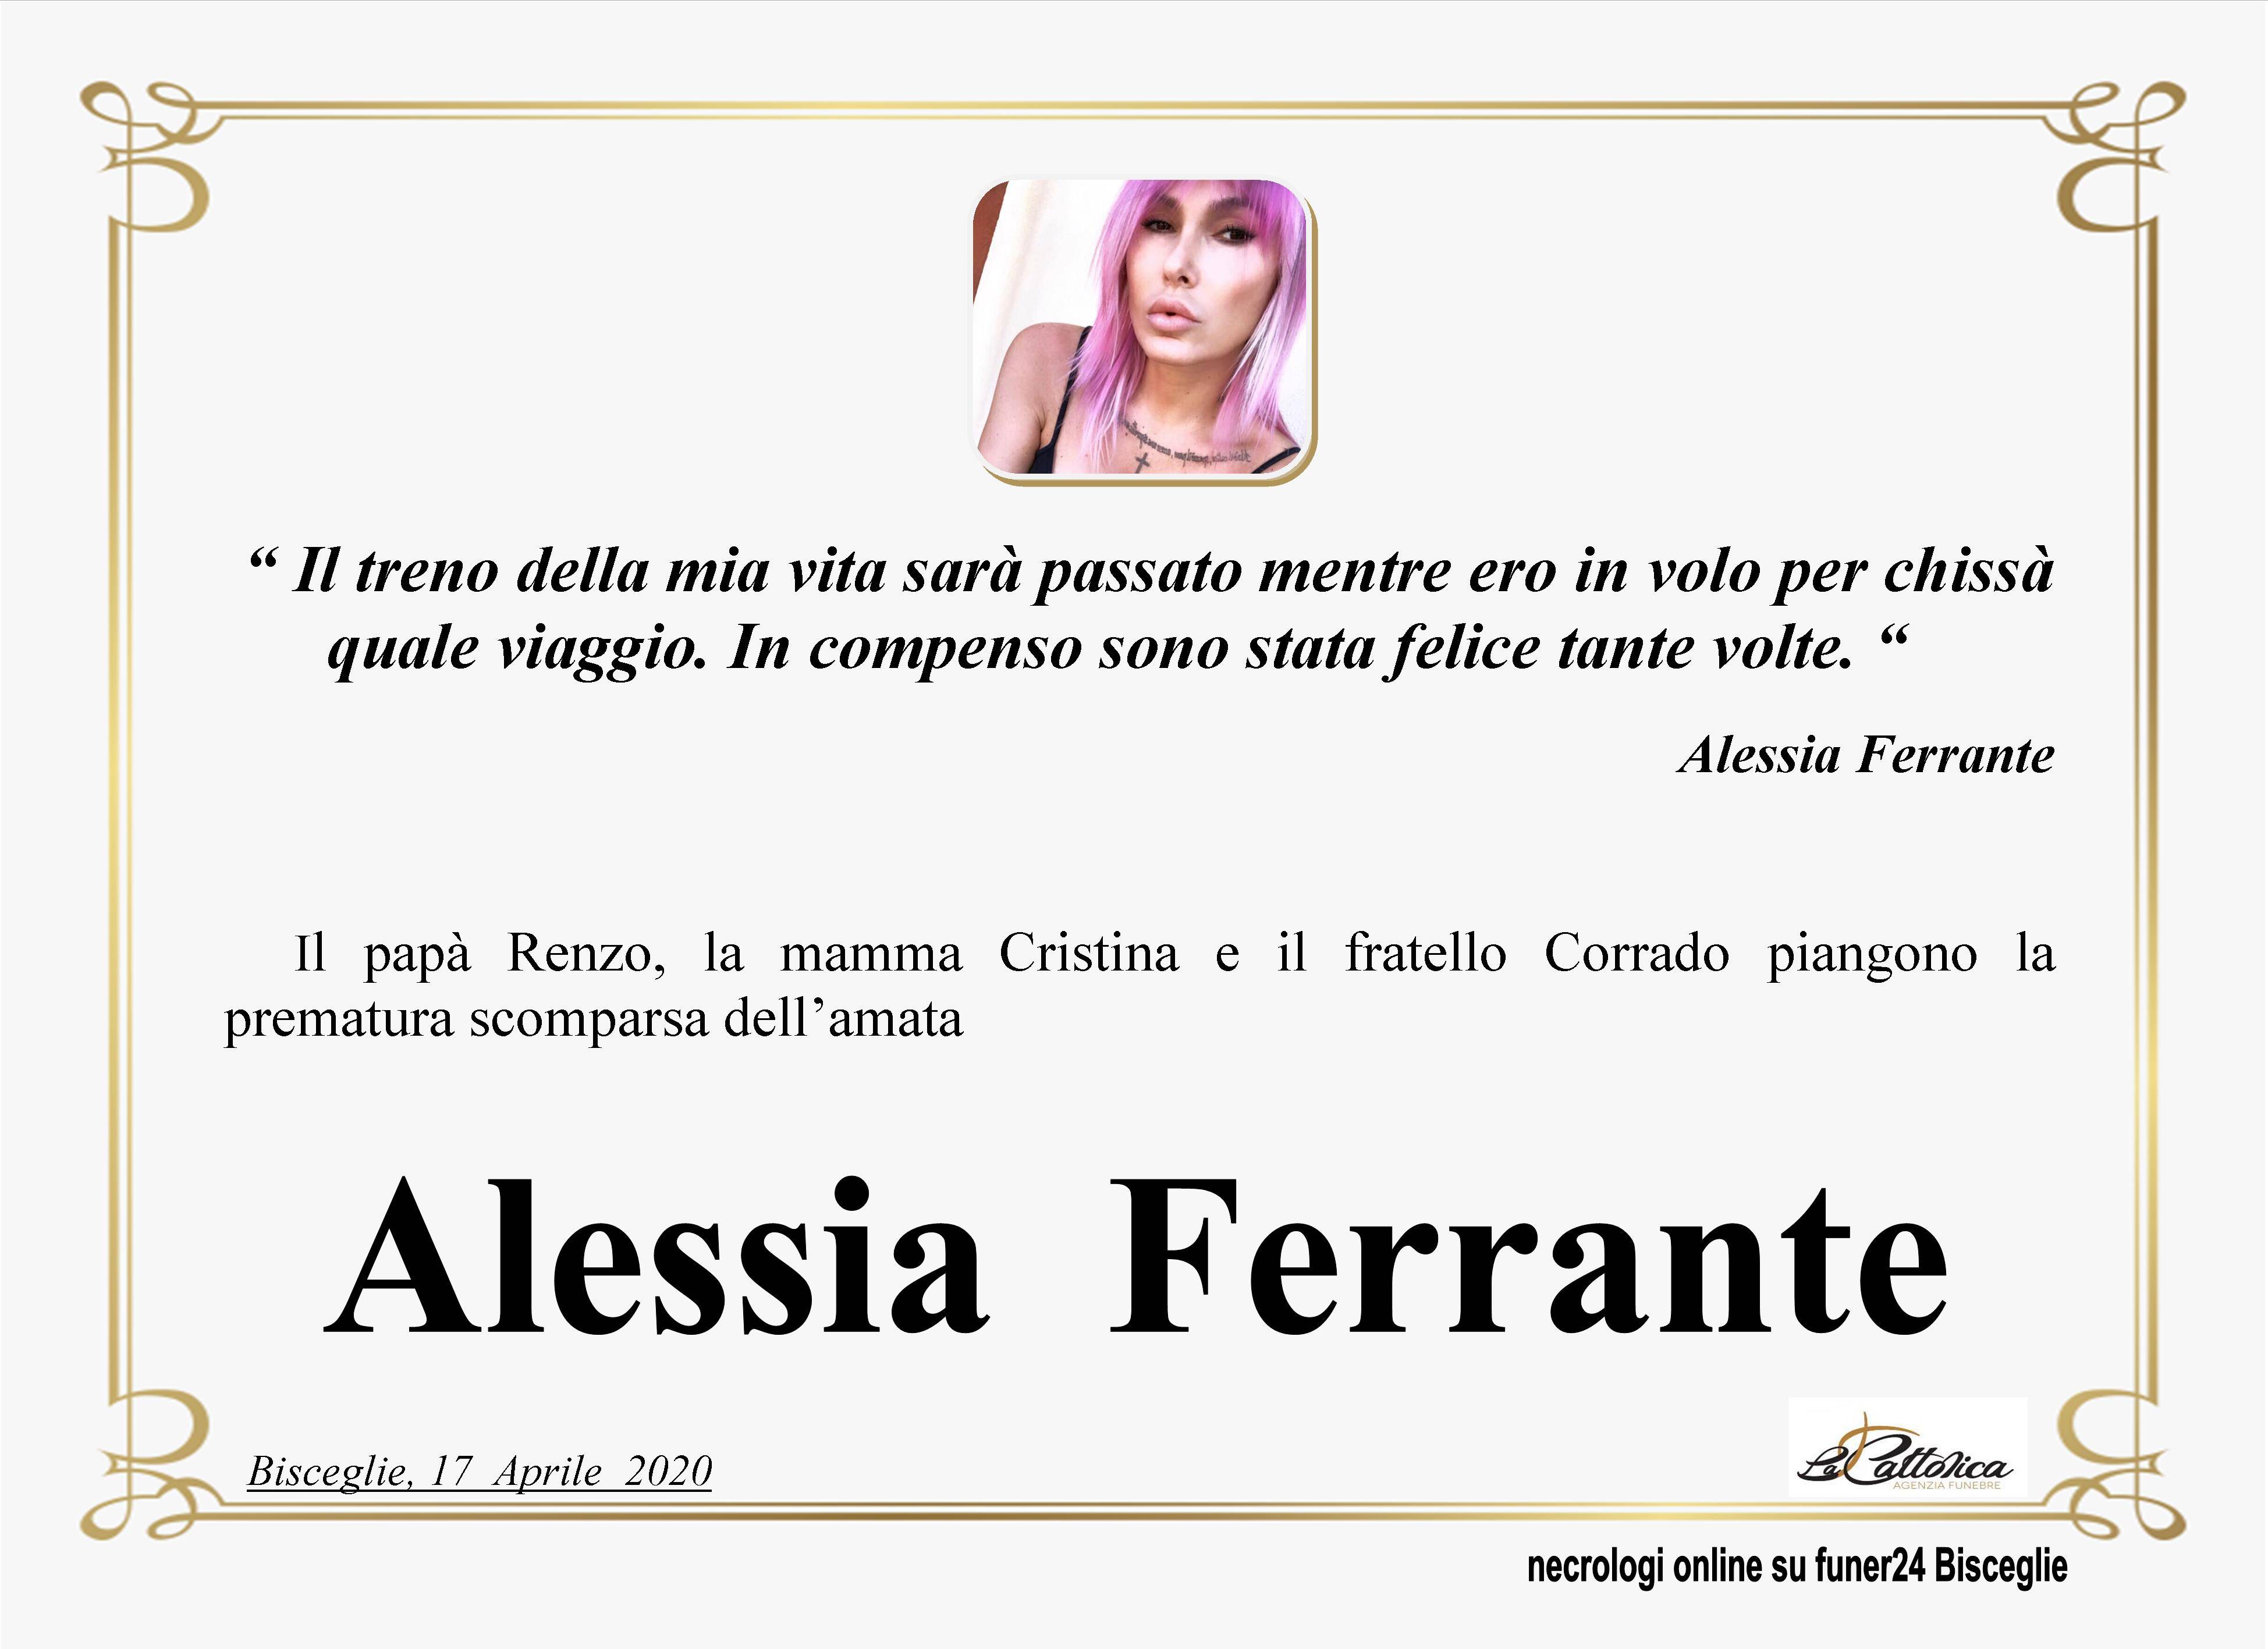 Alessia Ferrante